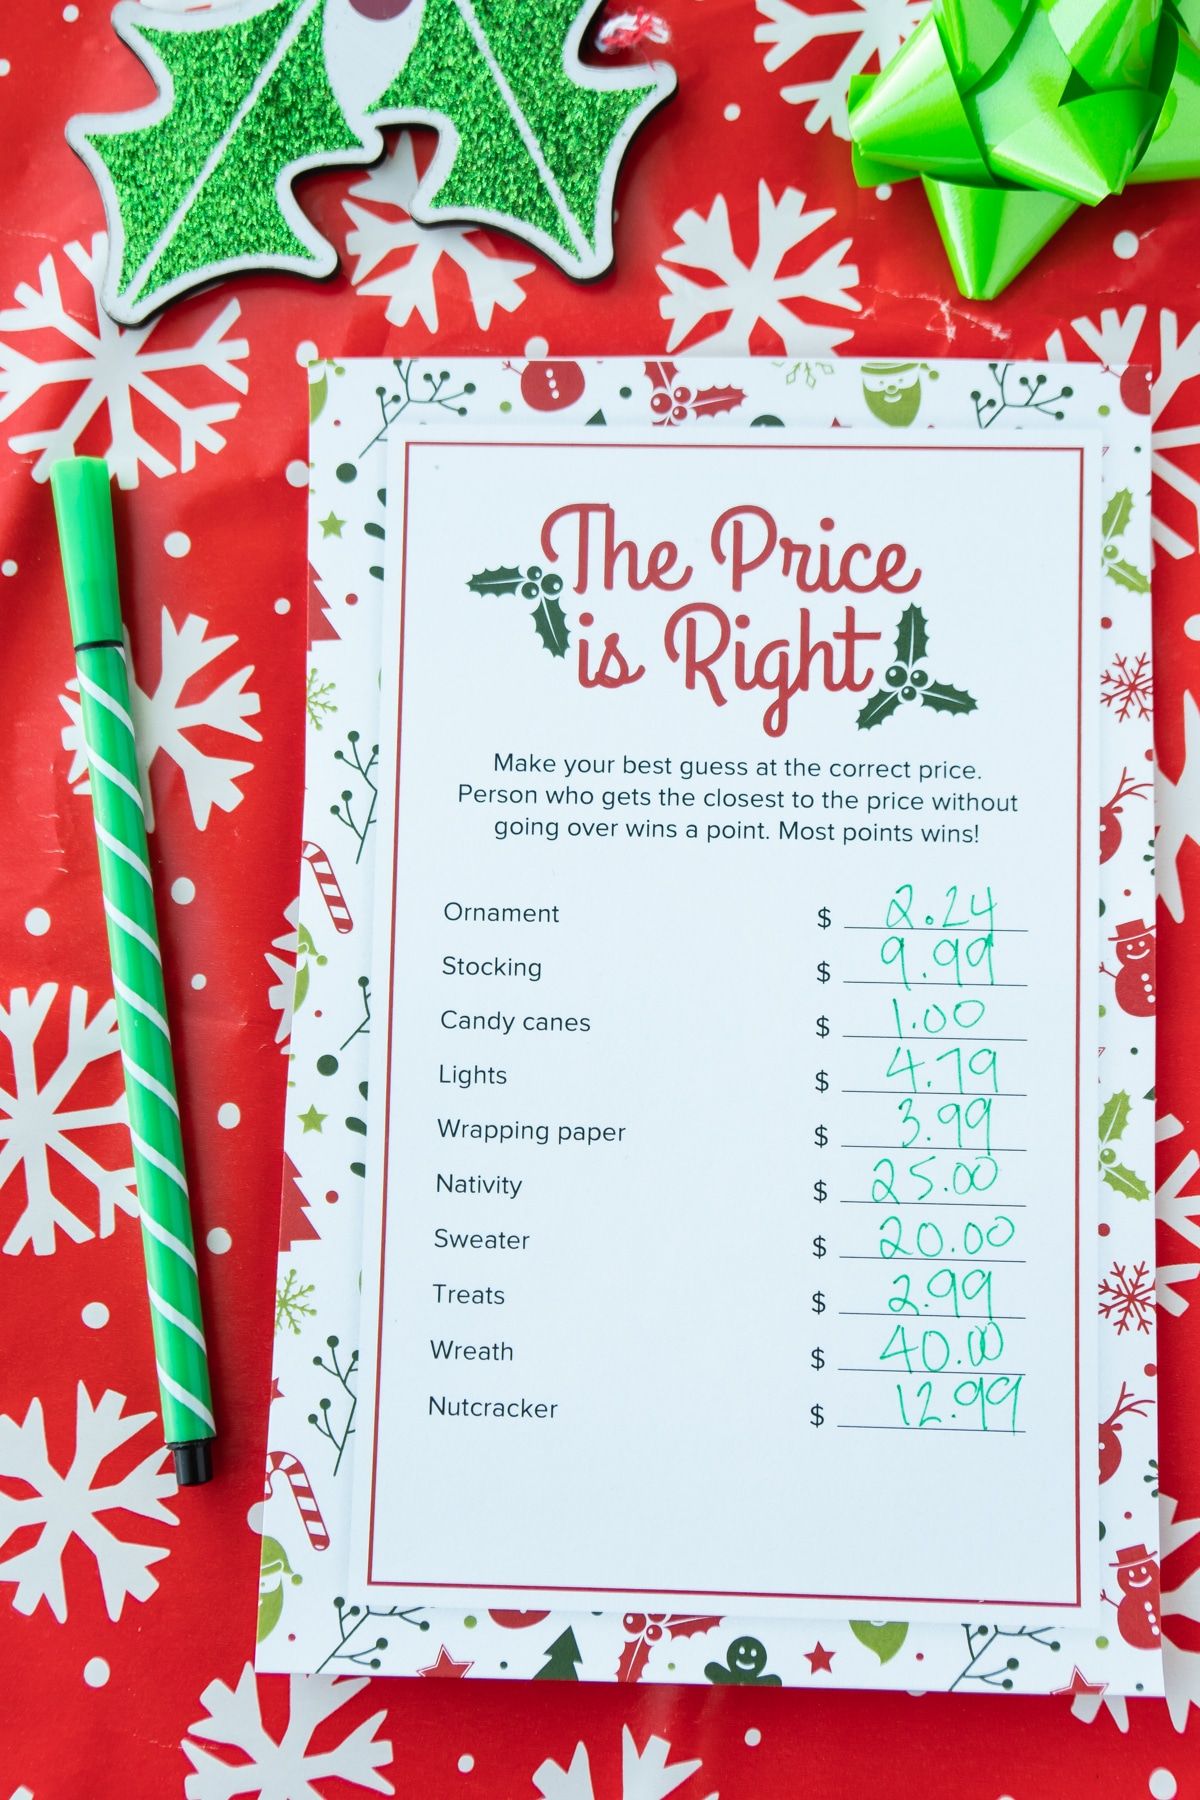 El precio de Navidad es el juego correcto con los precios anotados